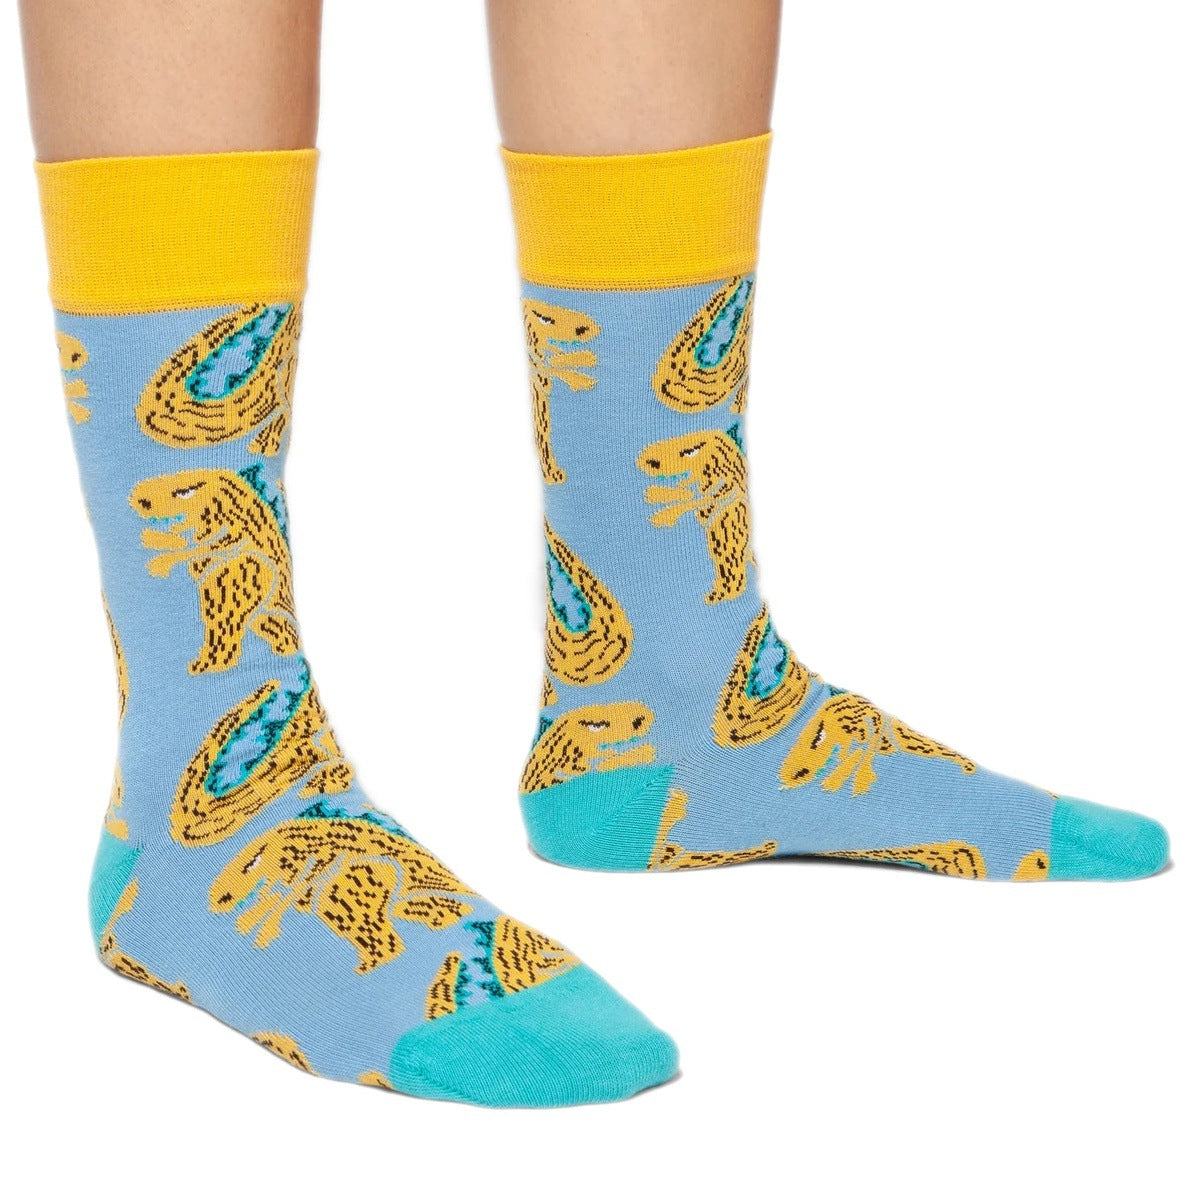 Gozilla socks